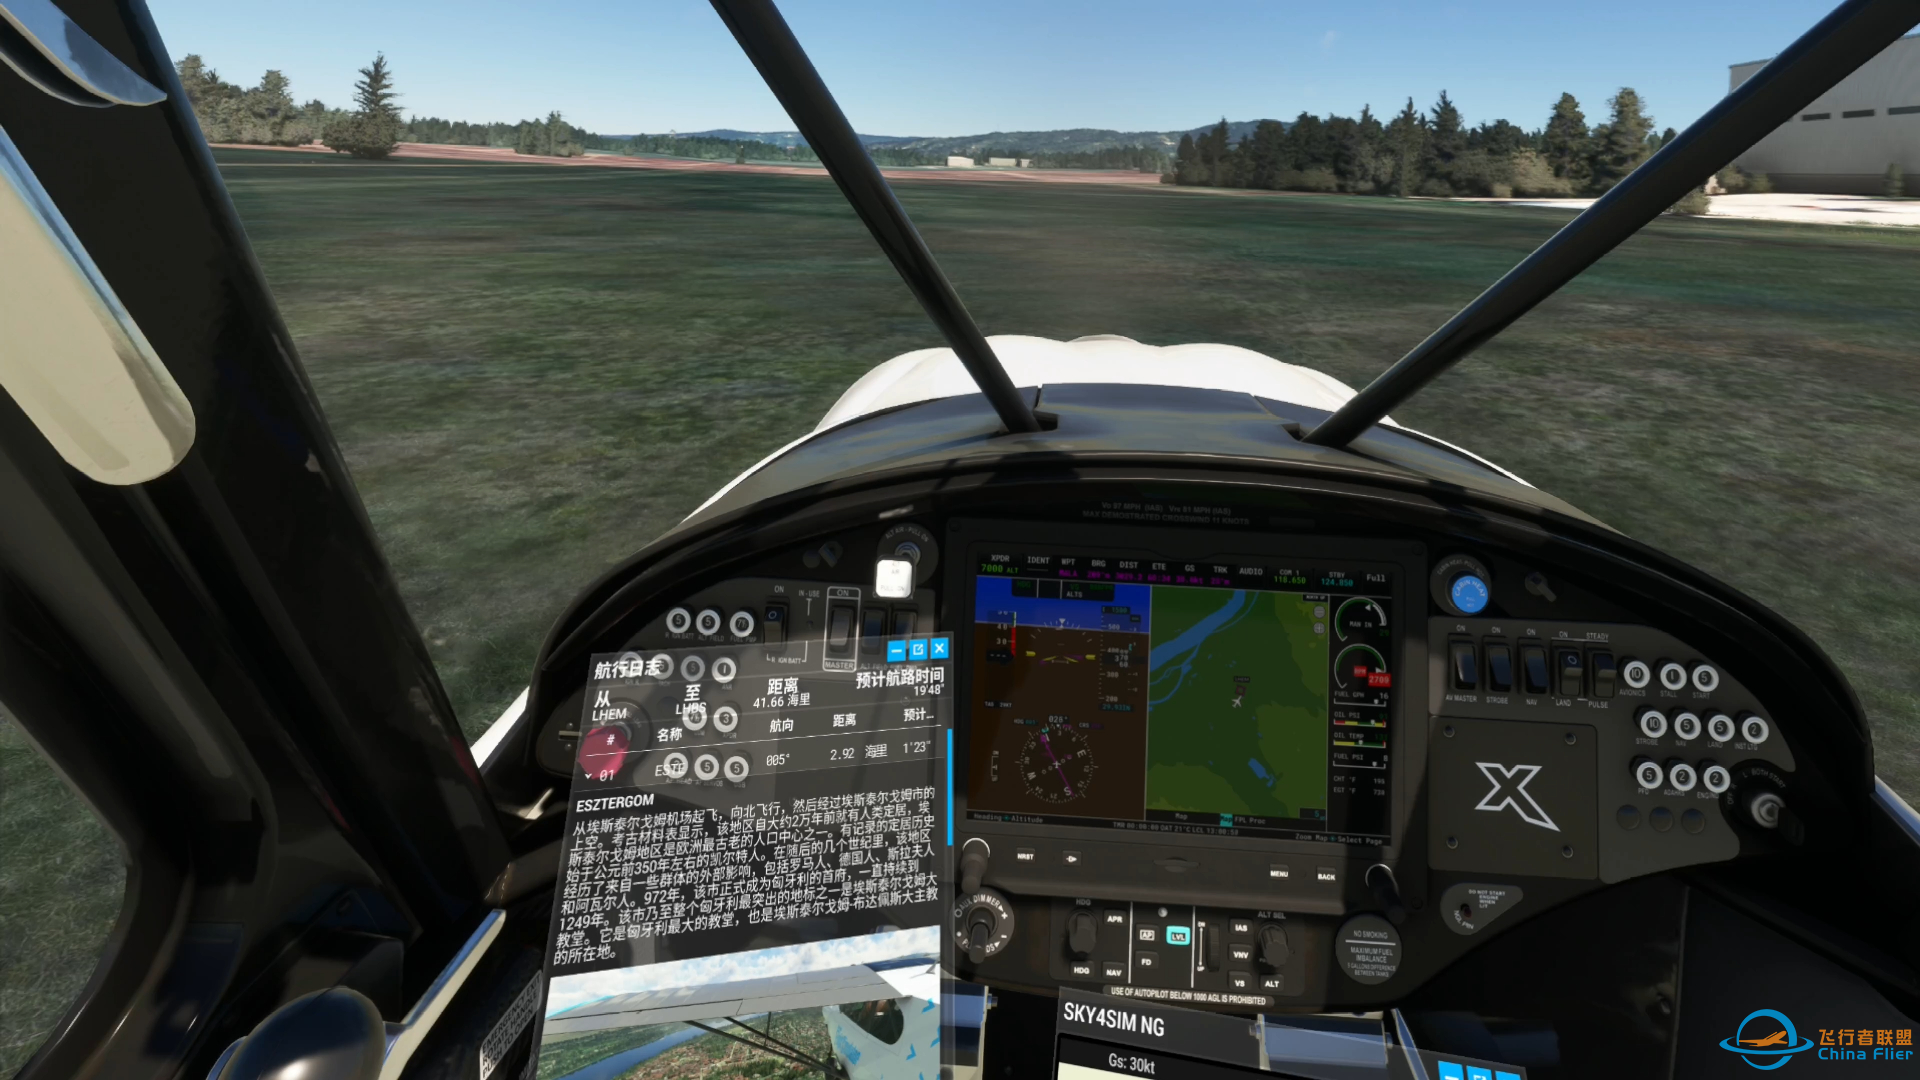 微软模拟飞行 596 VR 多瑙河之旅 郊野之行-1447 